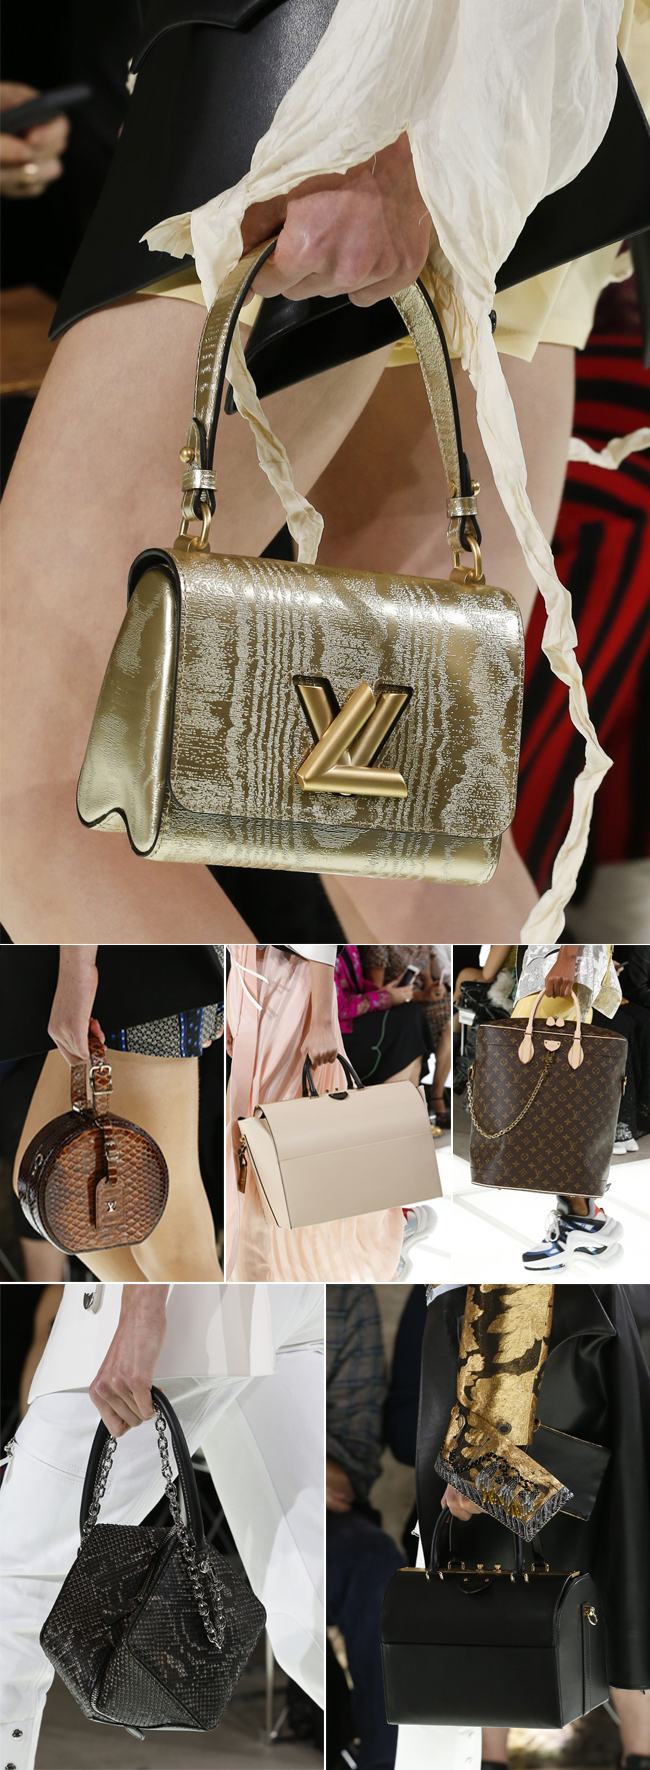 Louis Vuitton Spring/Summer 2018 Bag Collection Includes Speedy